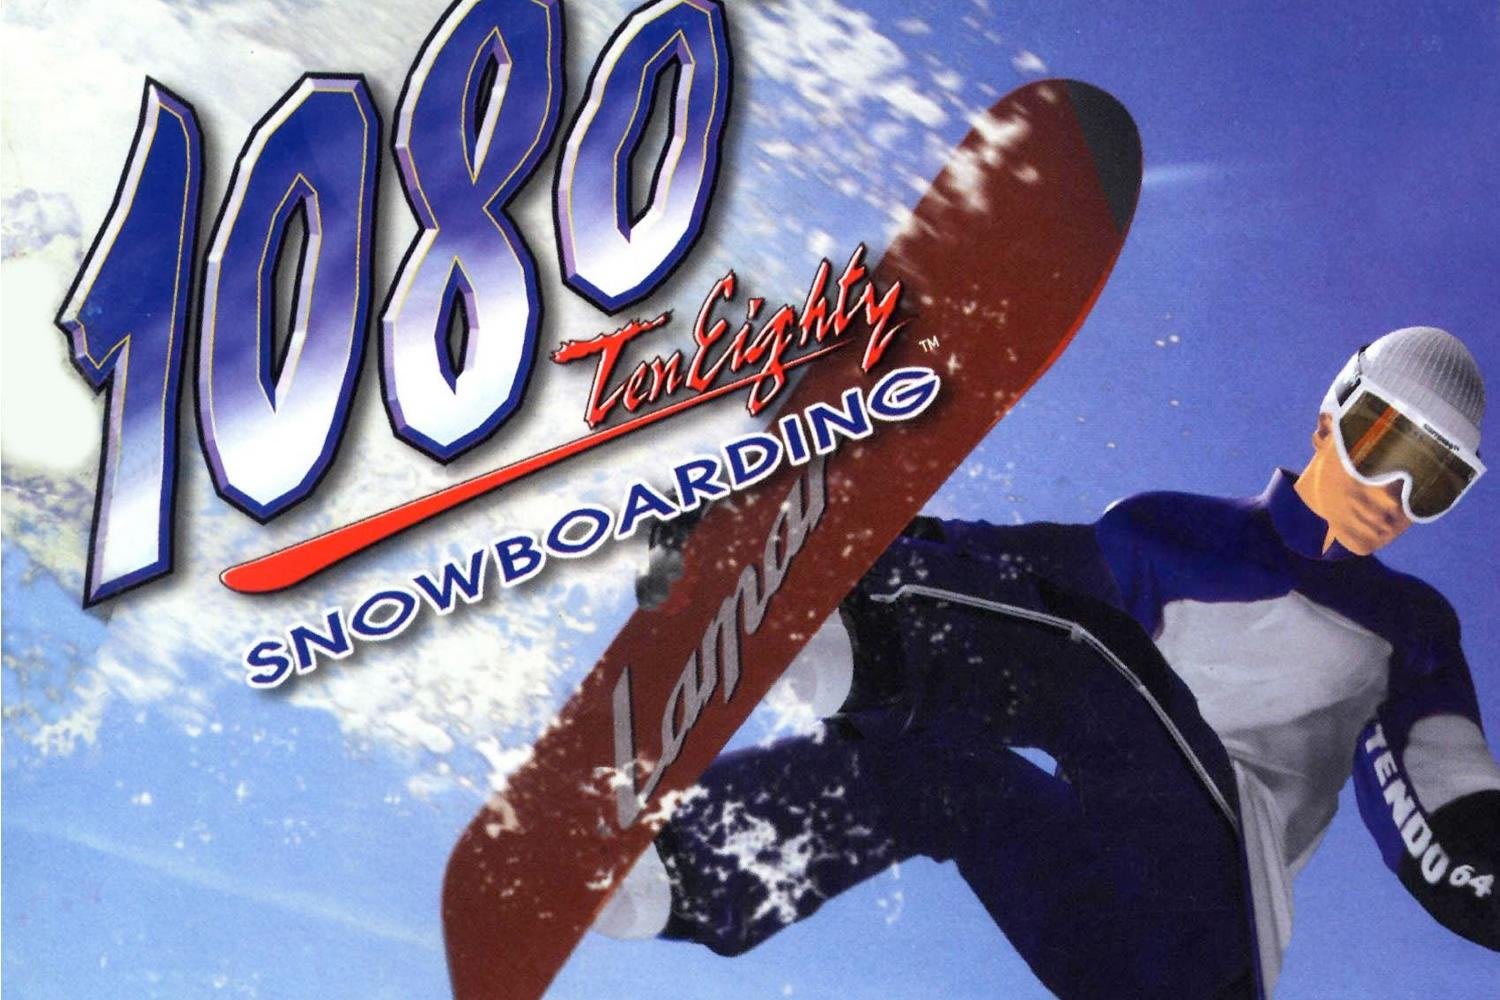 1080 snowboarding n64